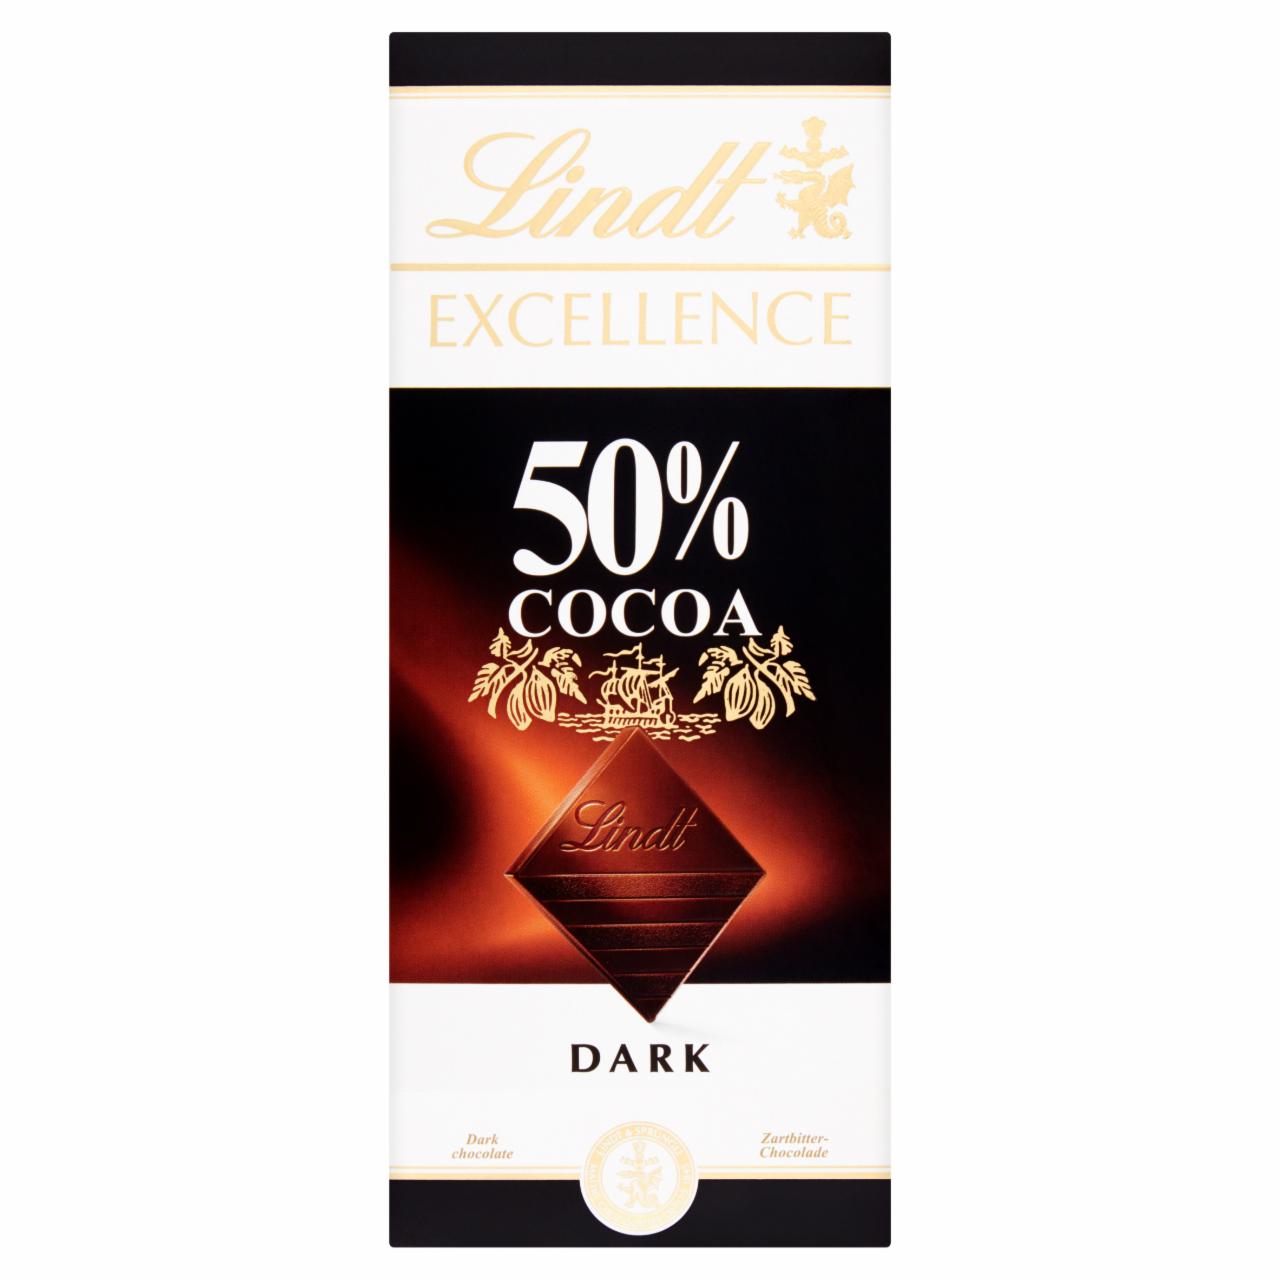 Zdjęcia - Lindt Excellence 50% Cocoa Czekolada deserowa 100 g